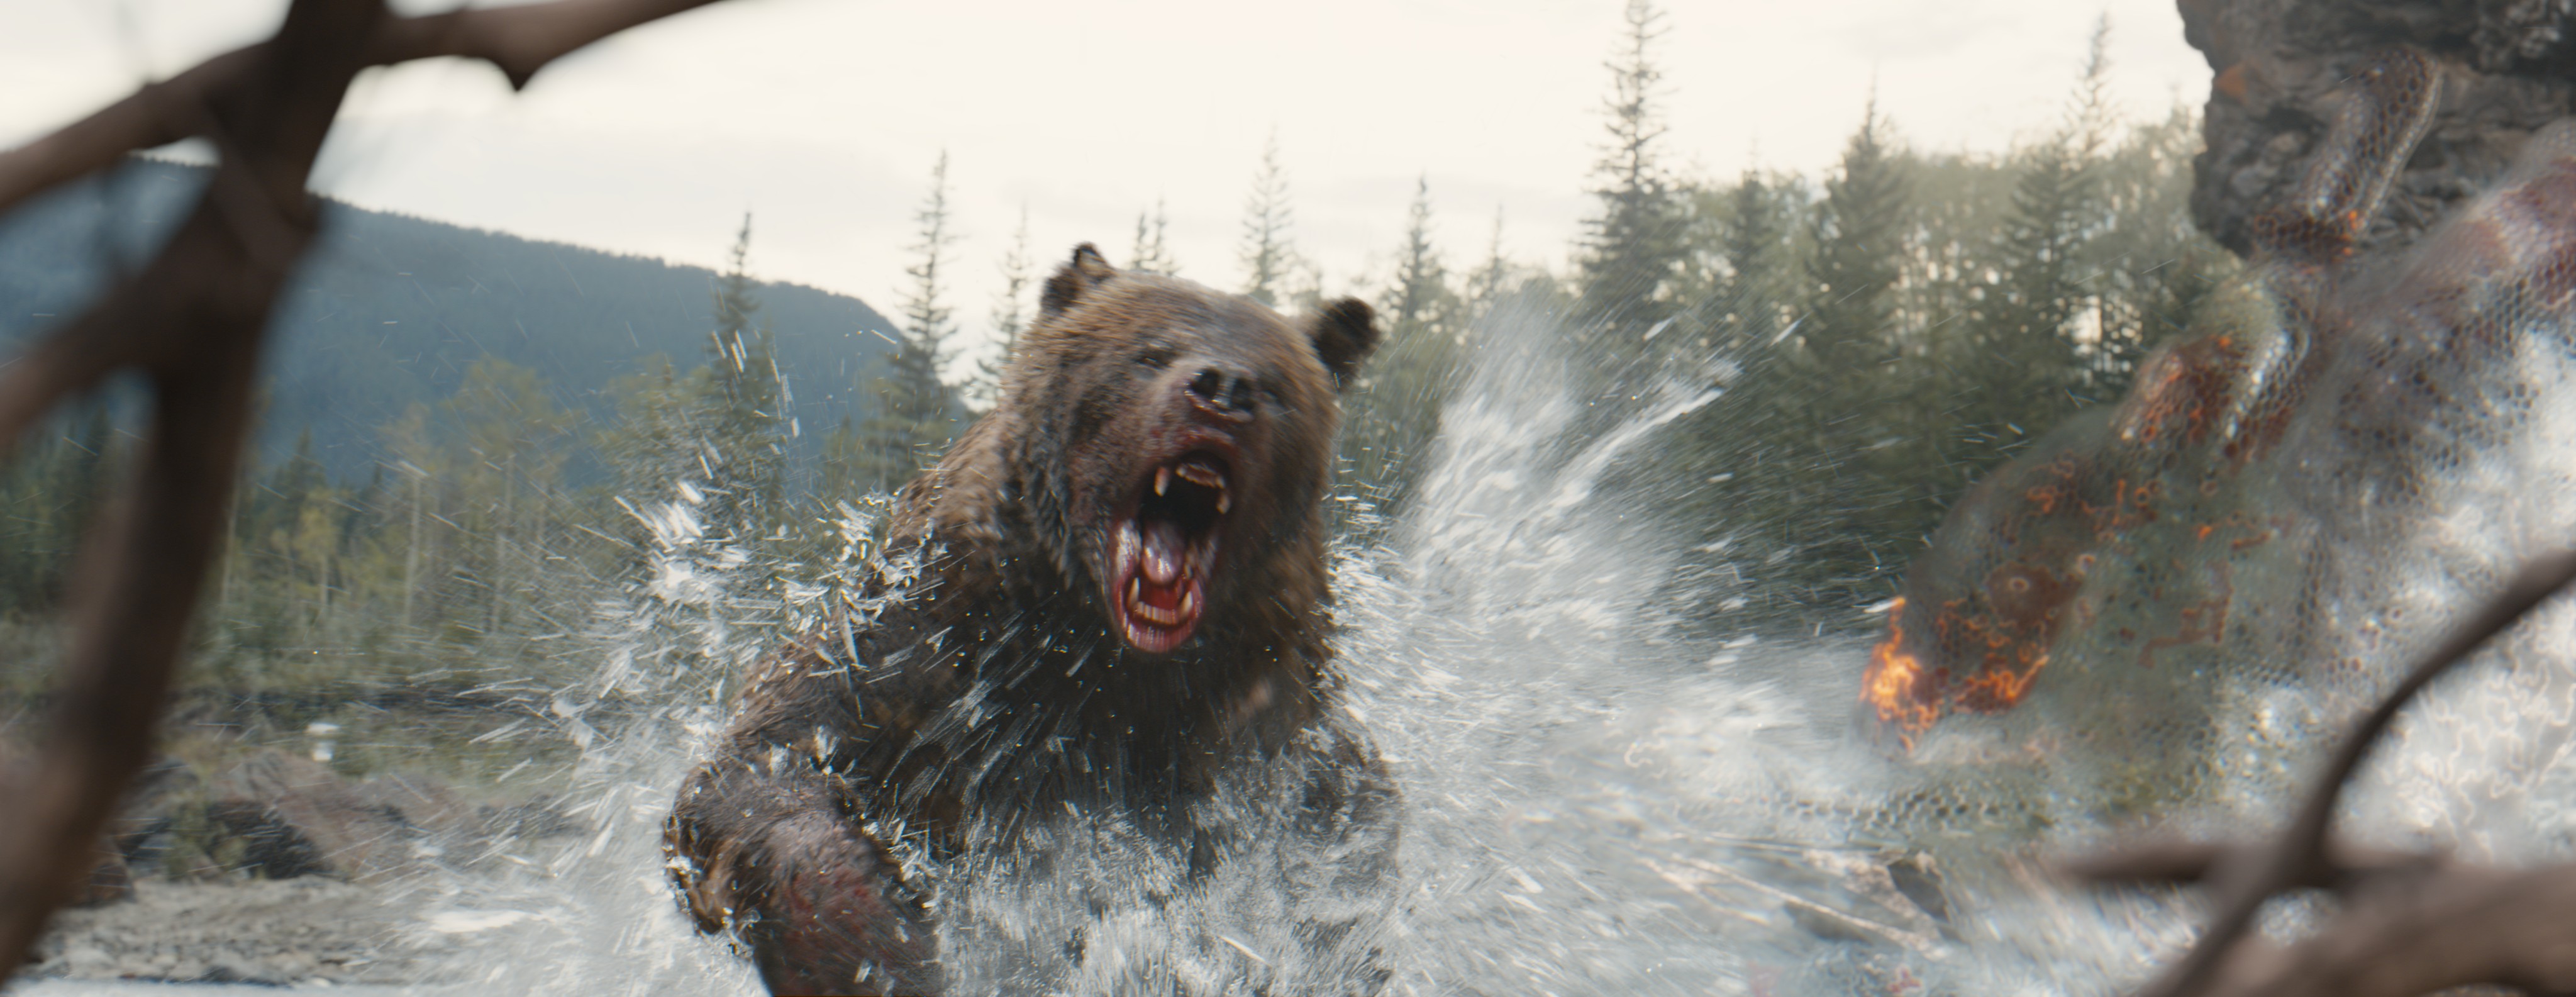 Um urso correndo pela água em direção a um alienígena Predador camuflado em uma cena de Prey.